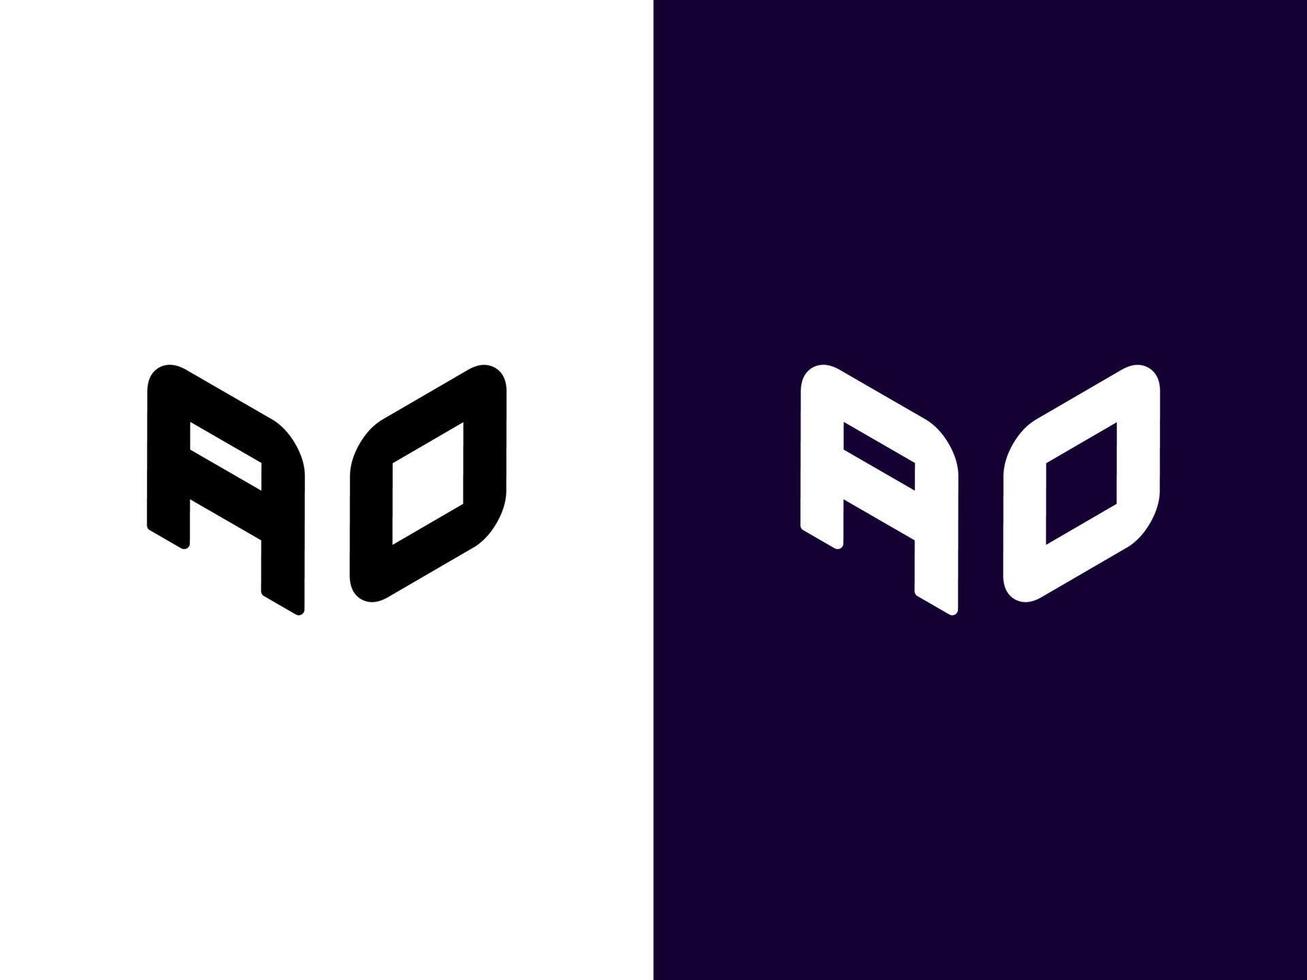 beginletter oa minimalistisch en modern 3d logo-ontwerp vector